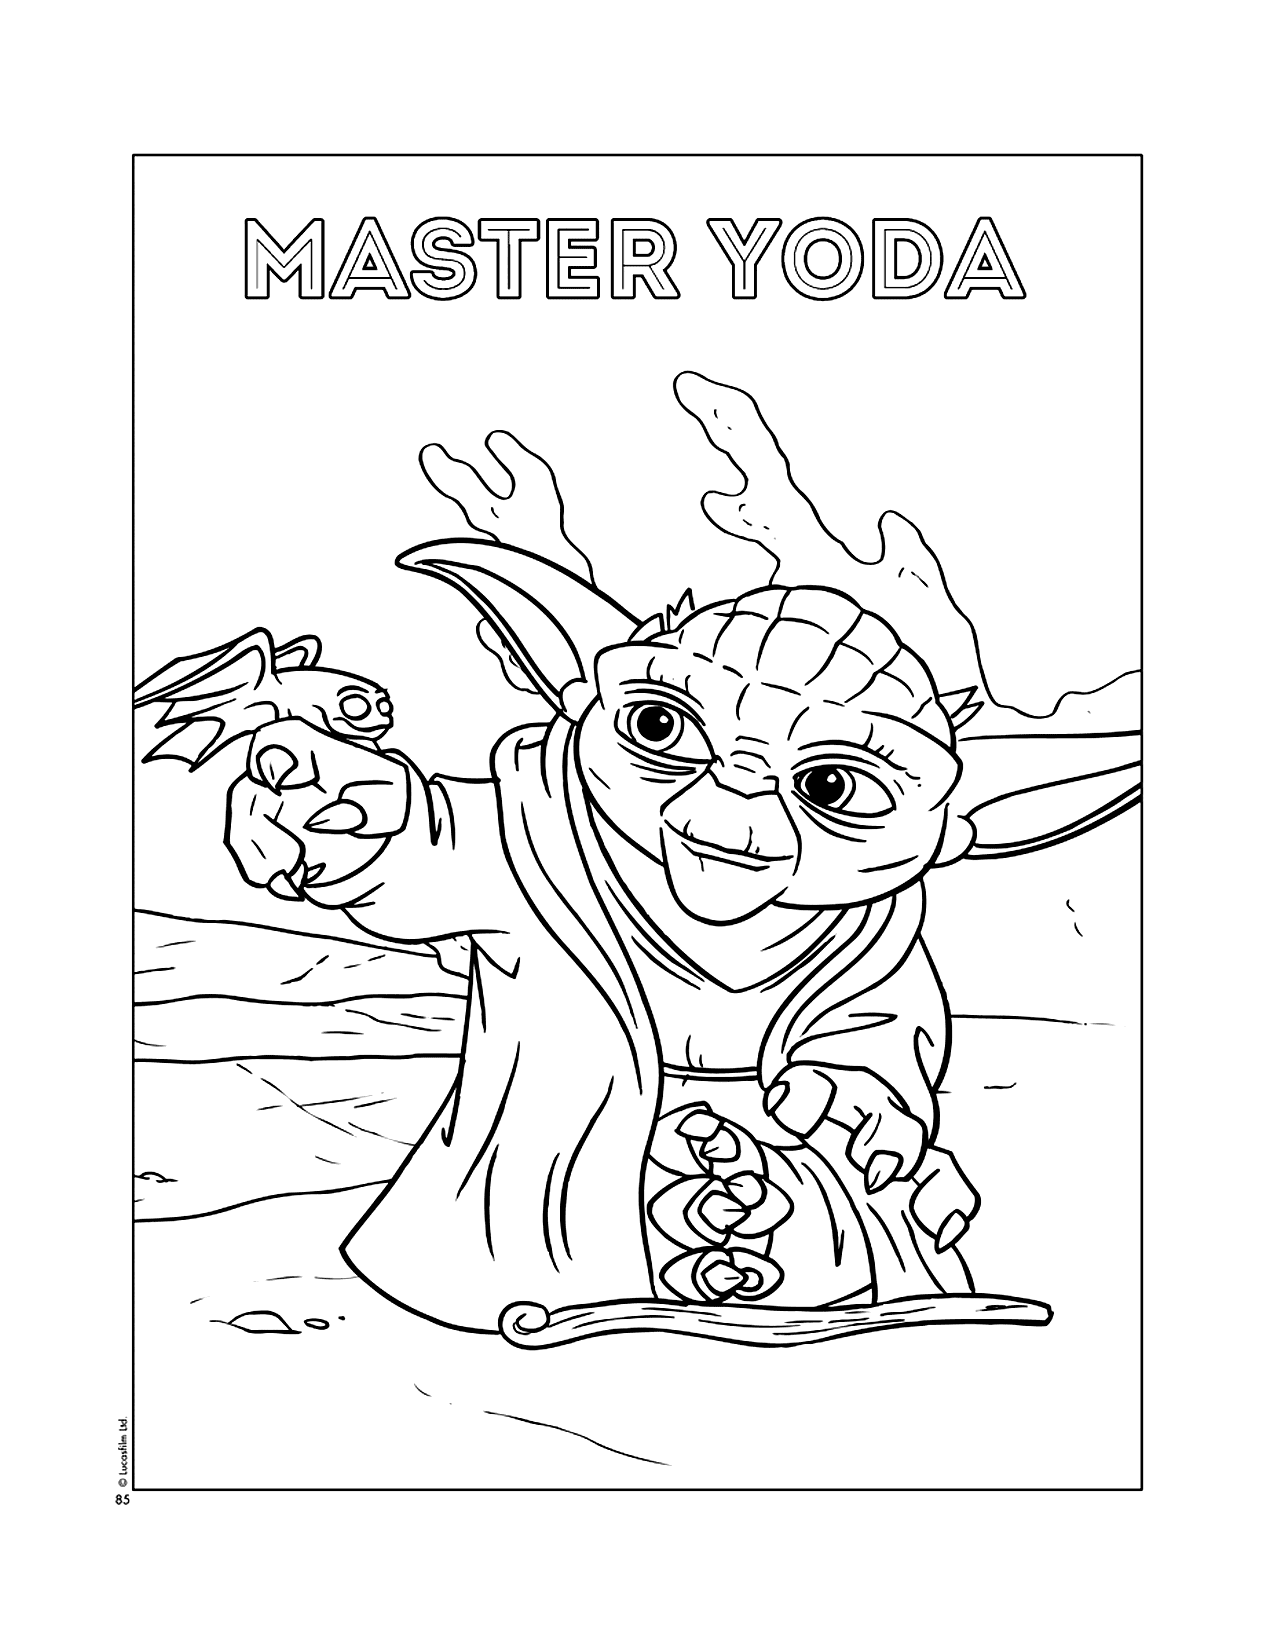 Master Yoda Coloring Sheet